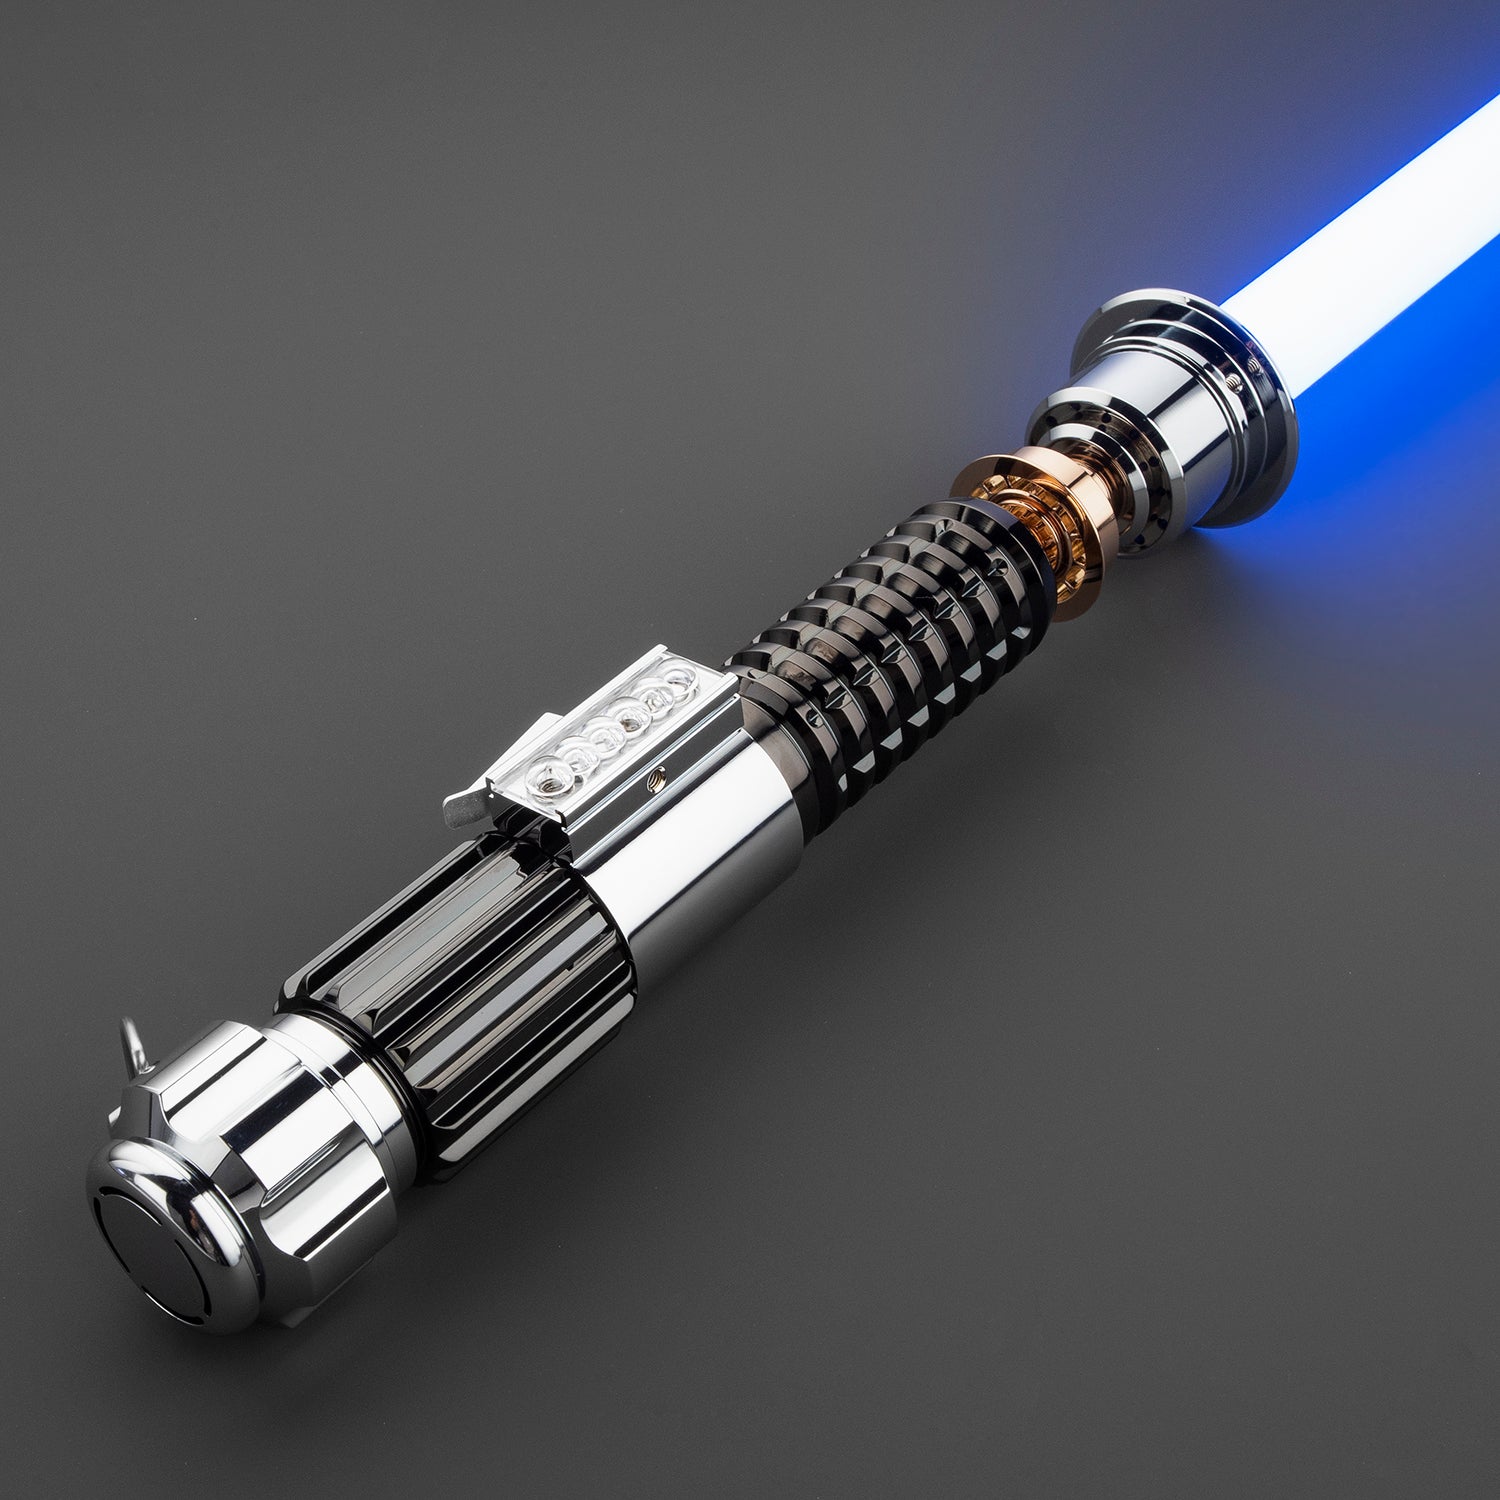 Obi-Wan Kenobi lightsaber - EpIV version | Dueling and neopixel ...